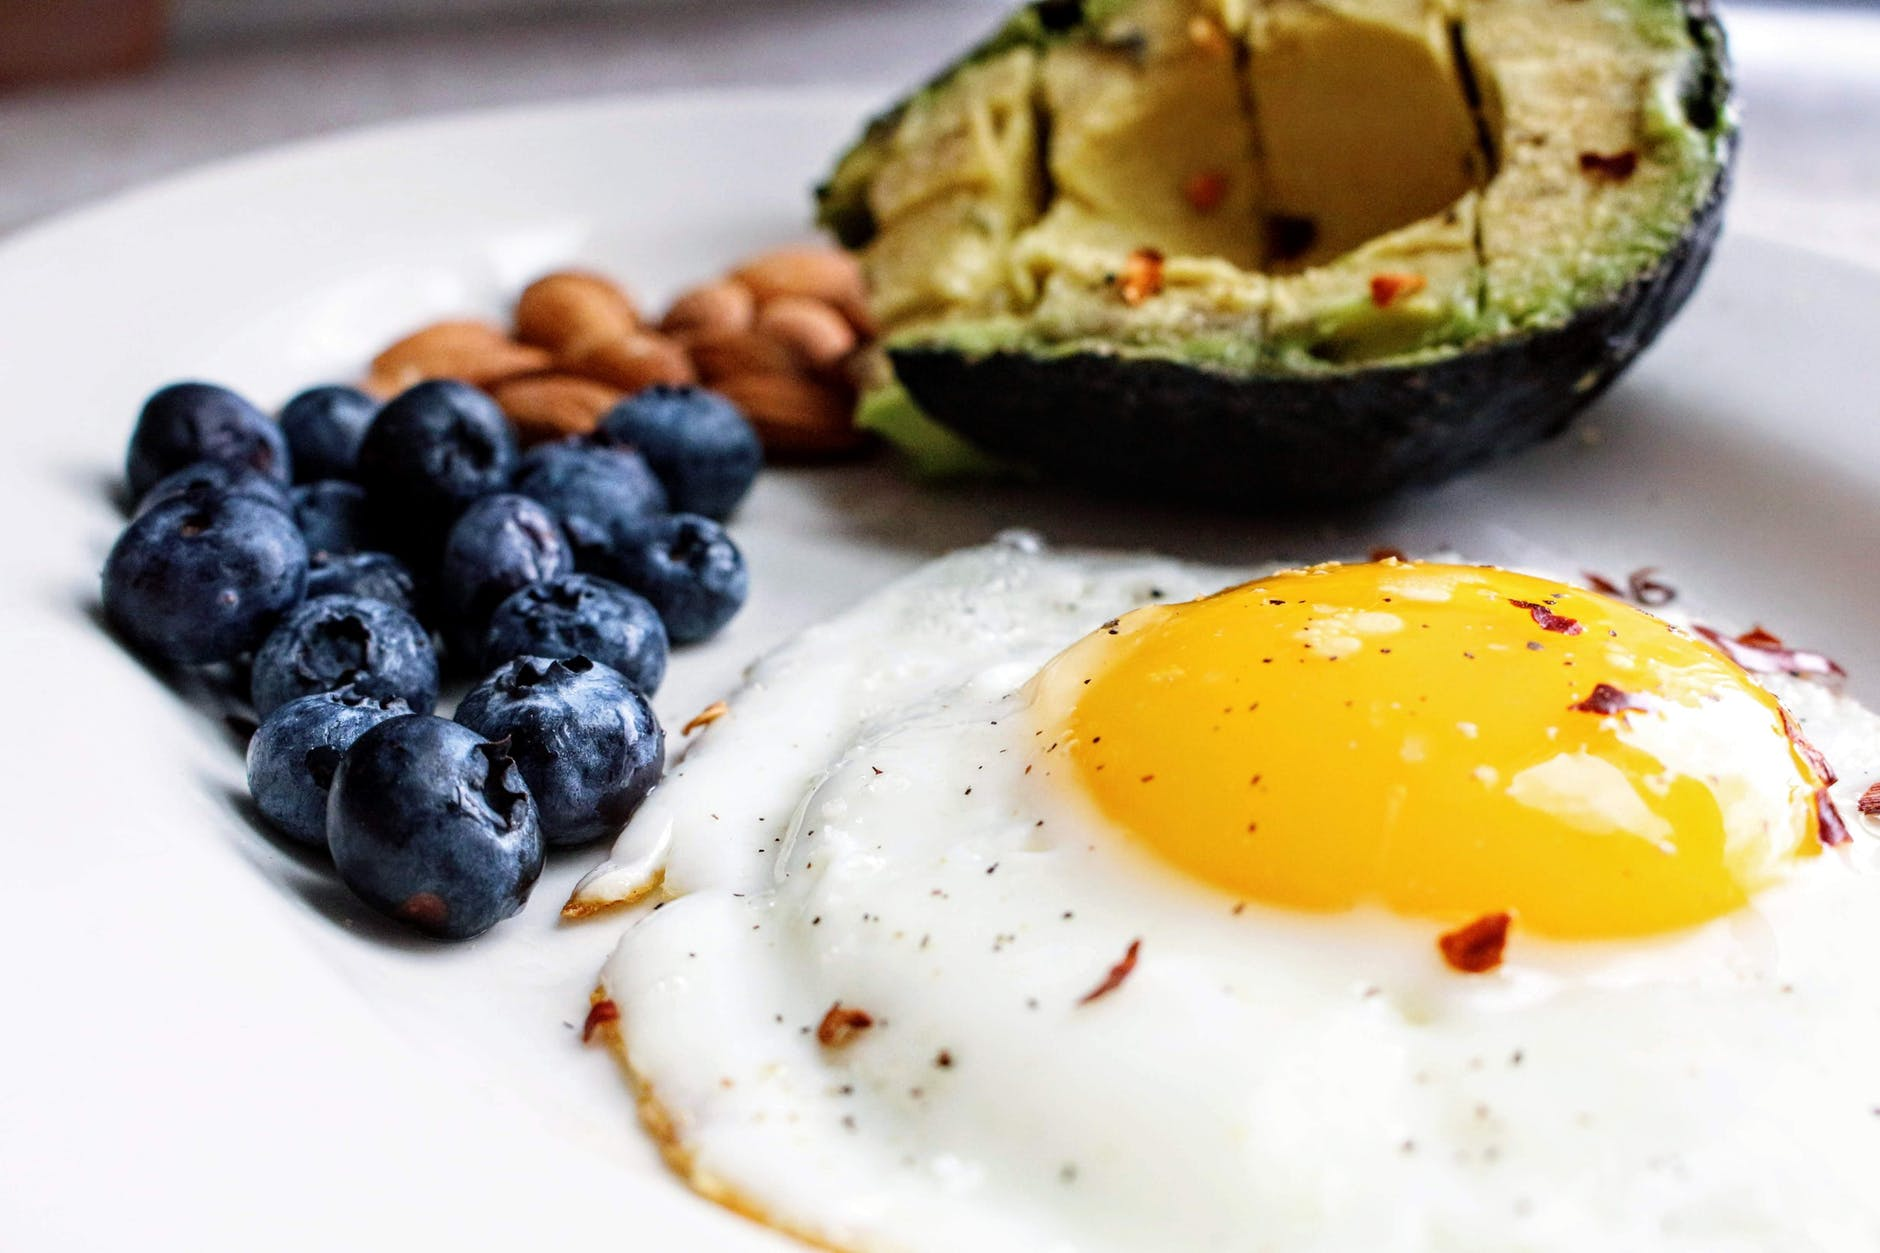 Trứng ốp la có thể ăn kèm thêm với salad hoặc rau quả để ngon hơn và dễ ăn hơn